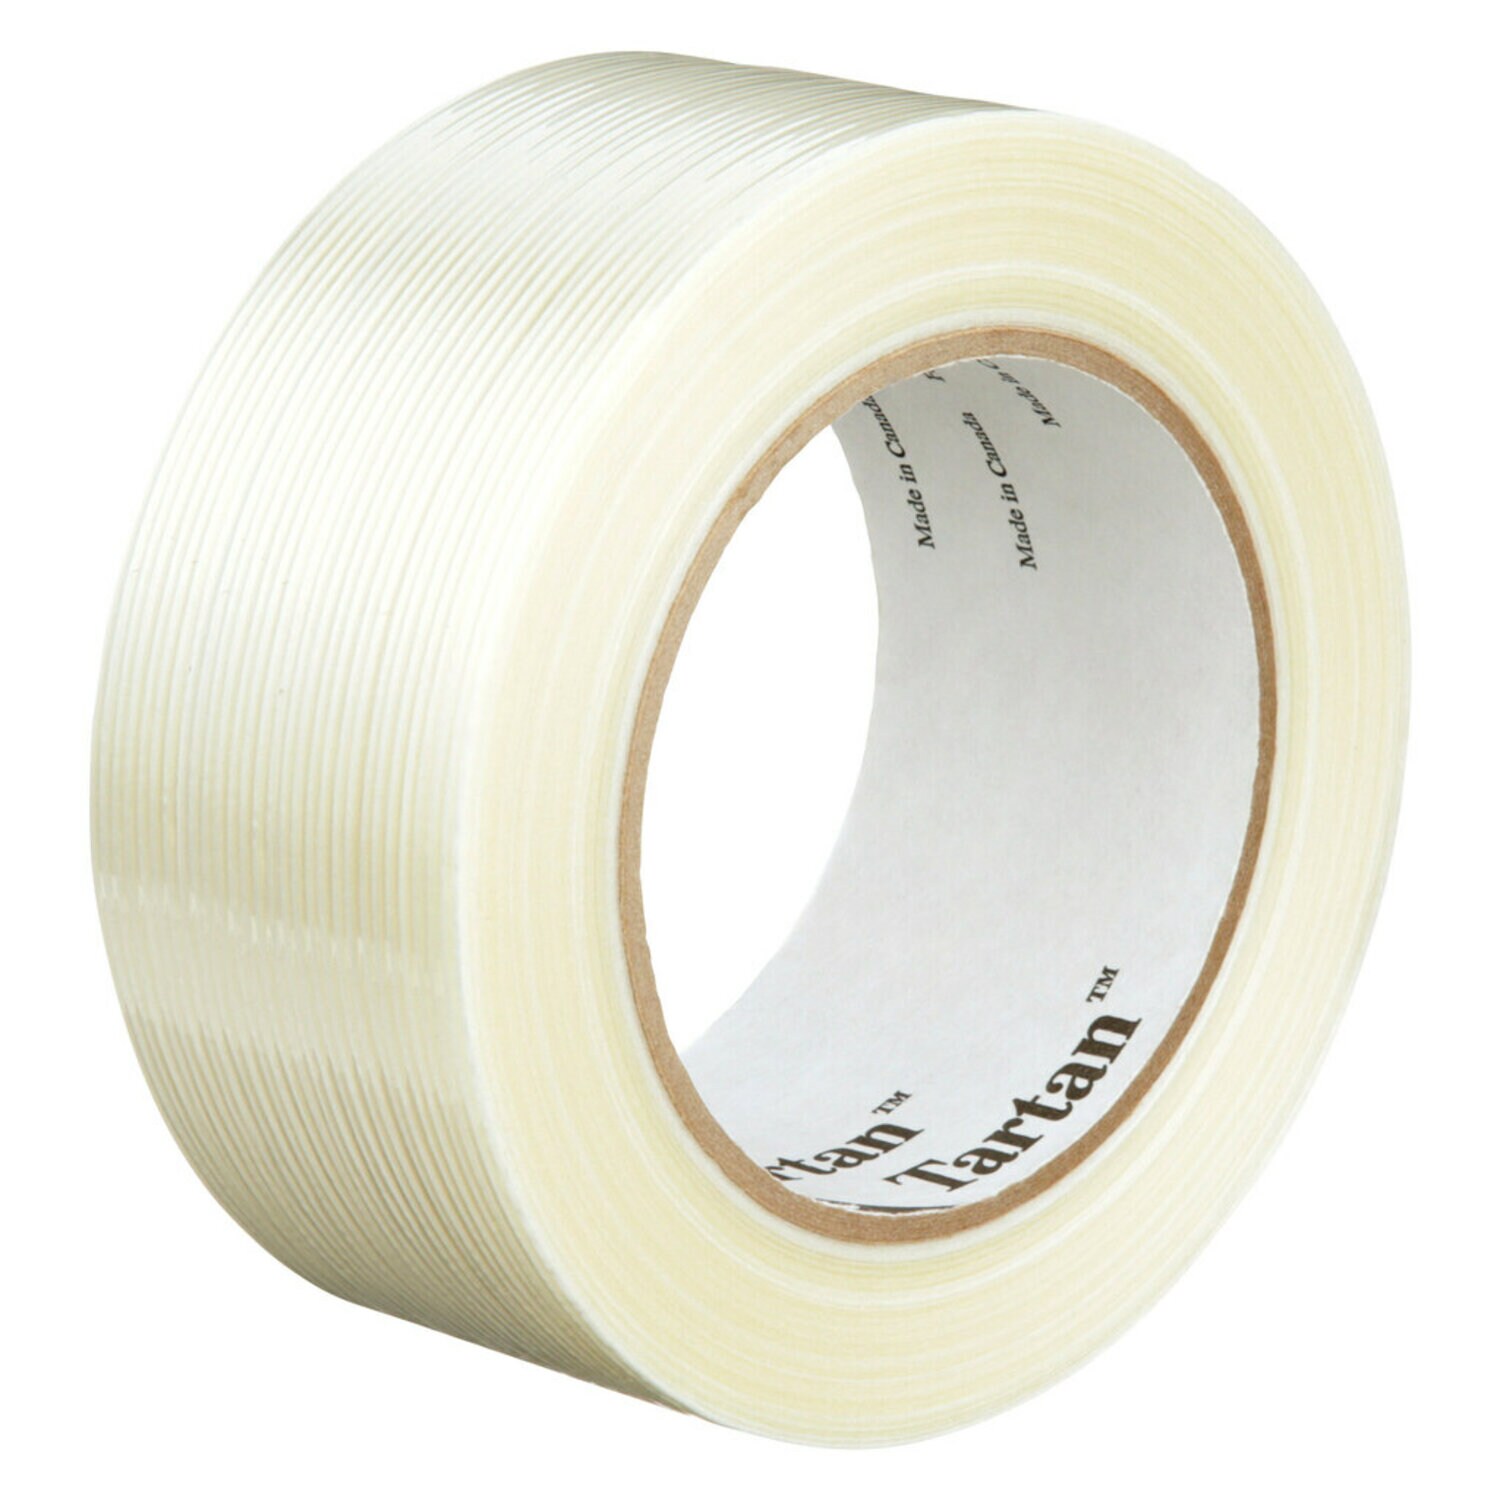 7000028888 - Tartan Filament Tape 8934, Clear, 48 mm x 55 m, 4 mil, 24 rolls per
case